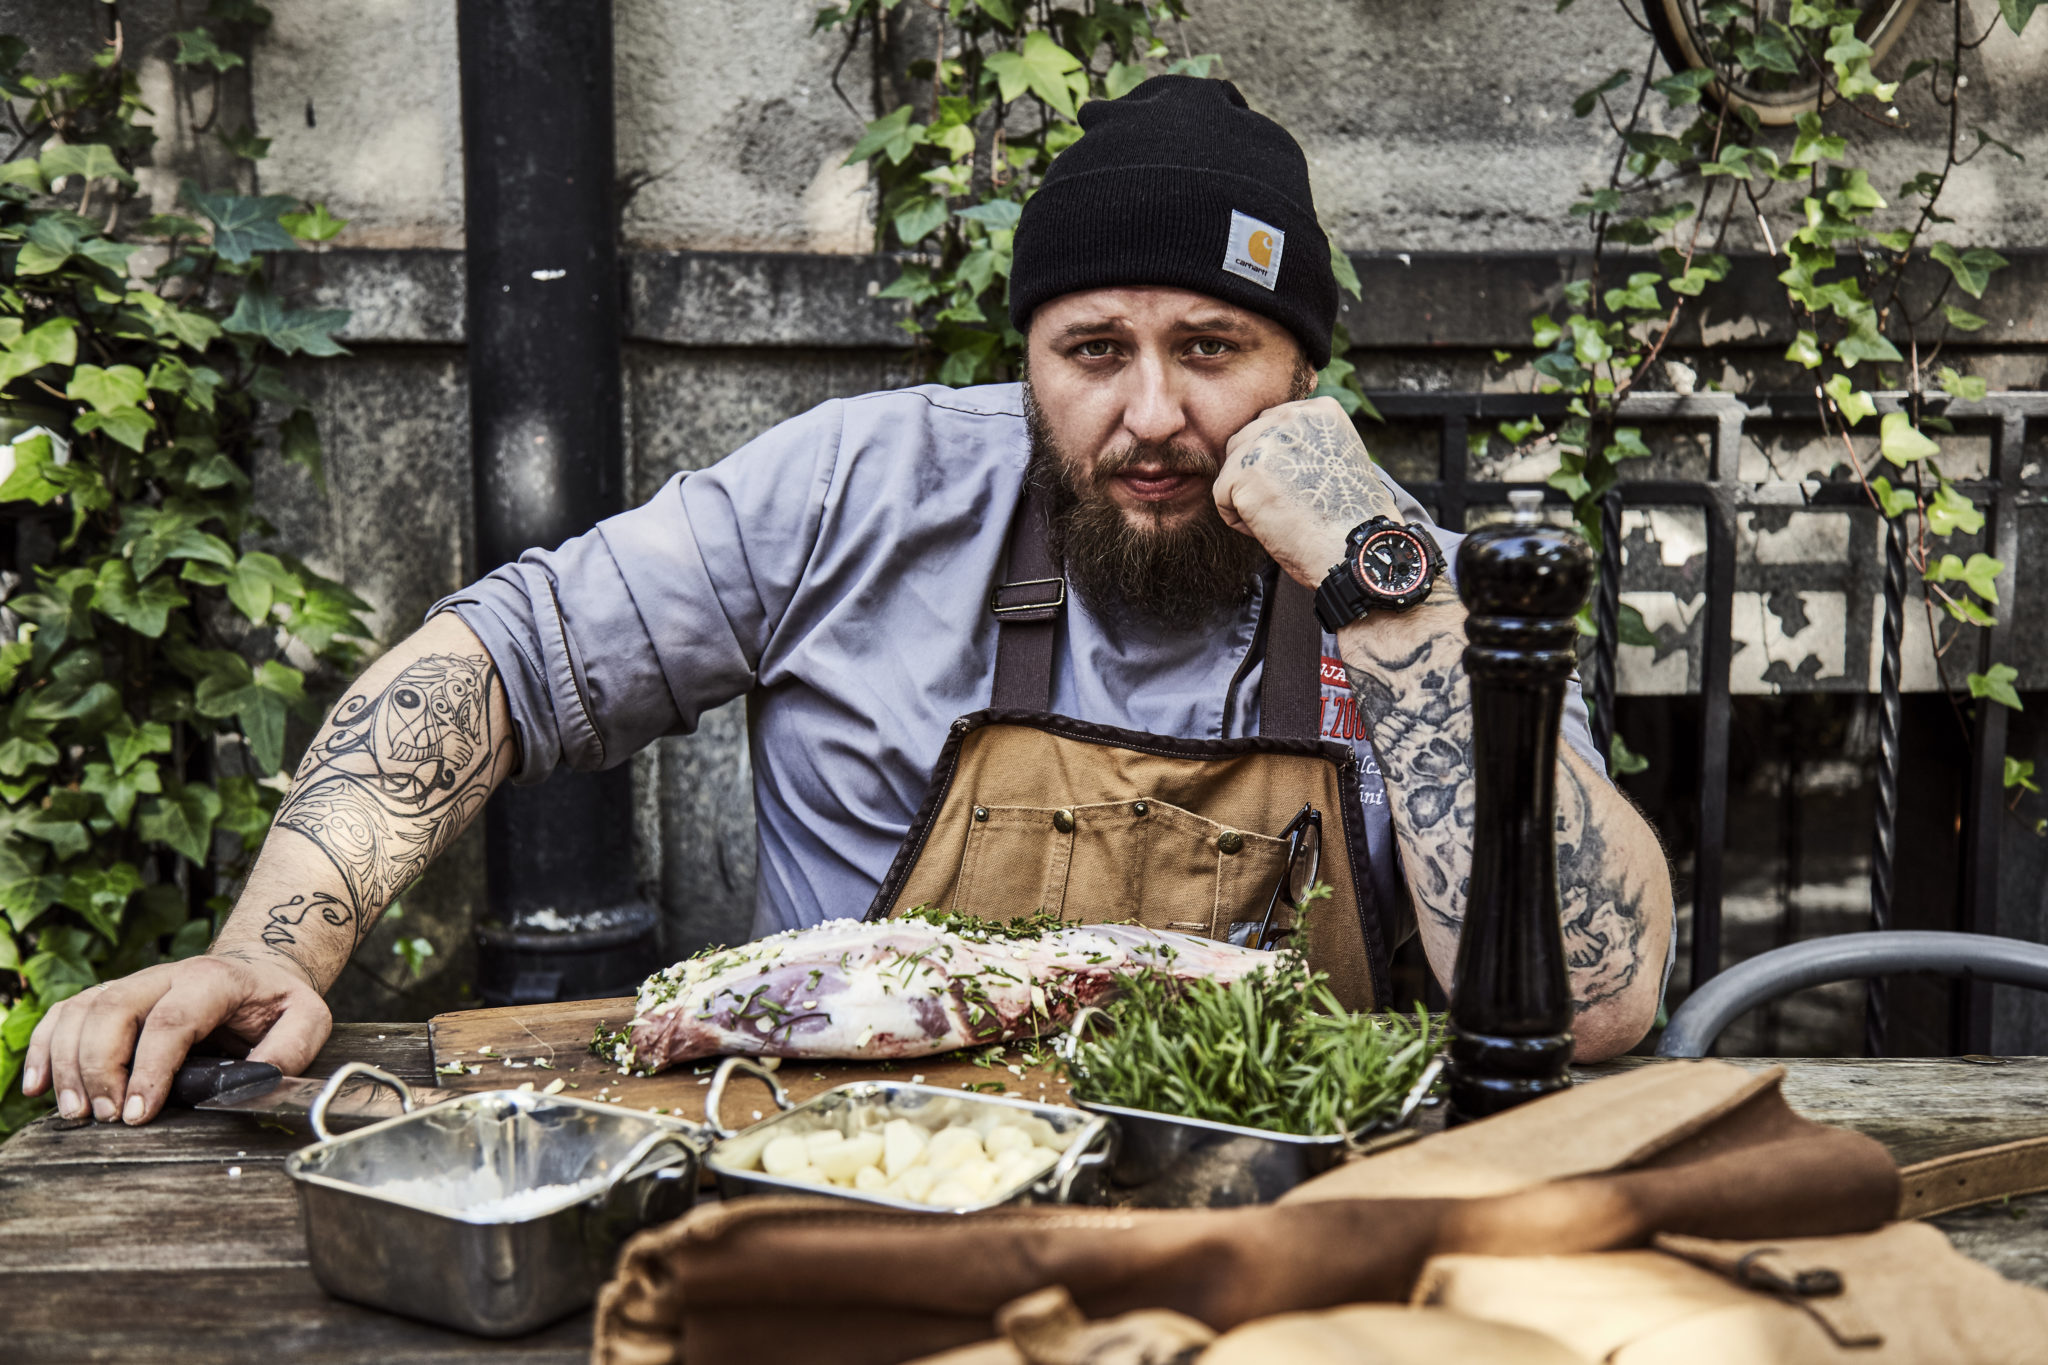 Mężczyzna z tatuażami i czapką na głowie siedzący przy stole z jedzeniem